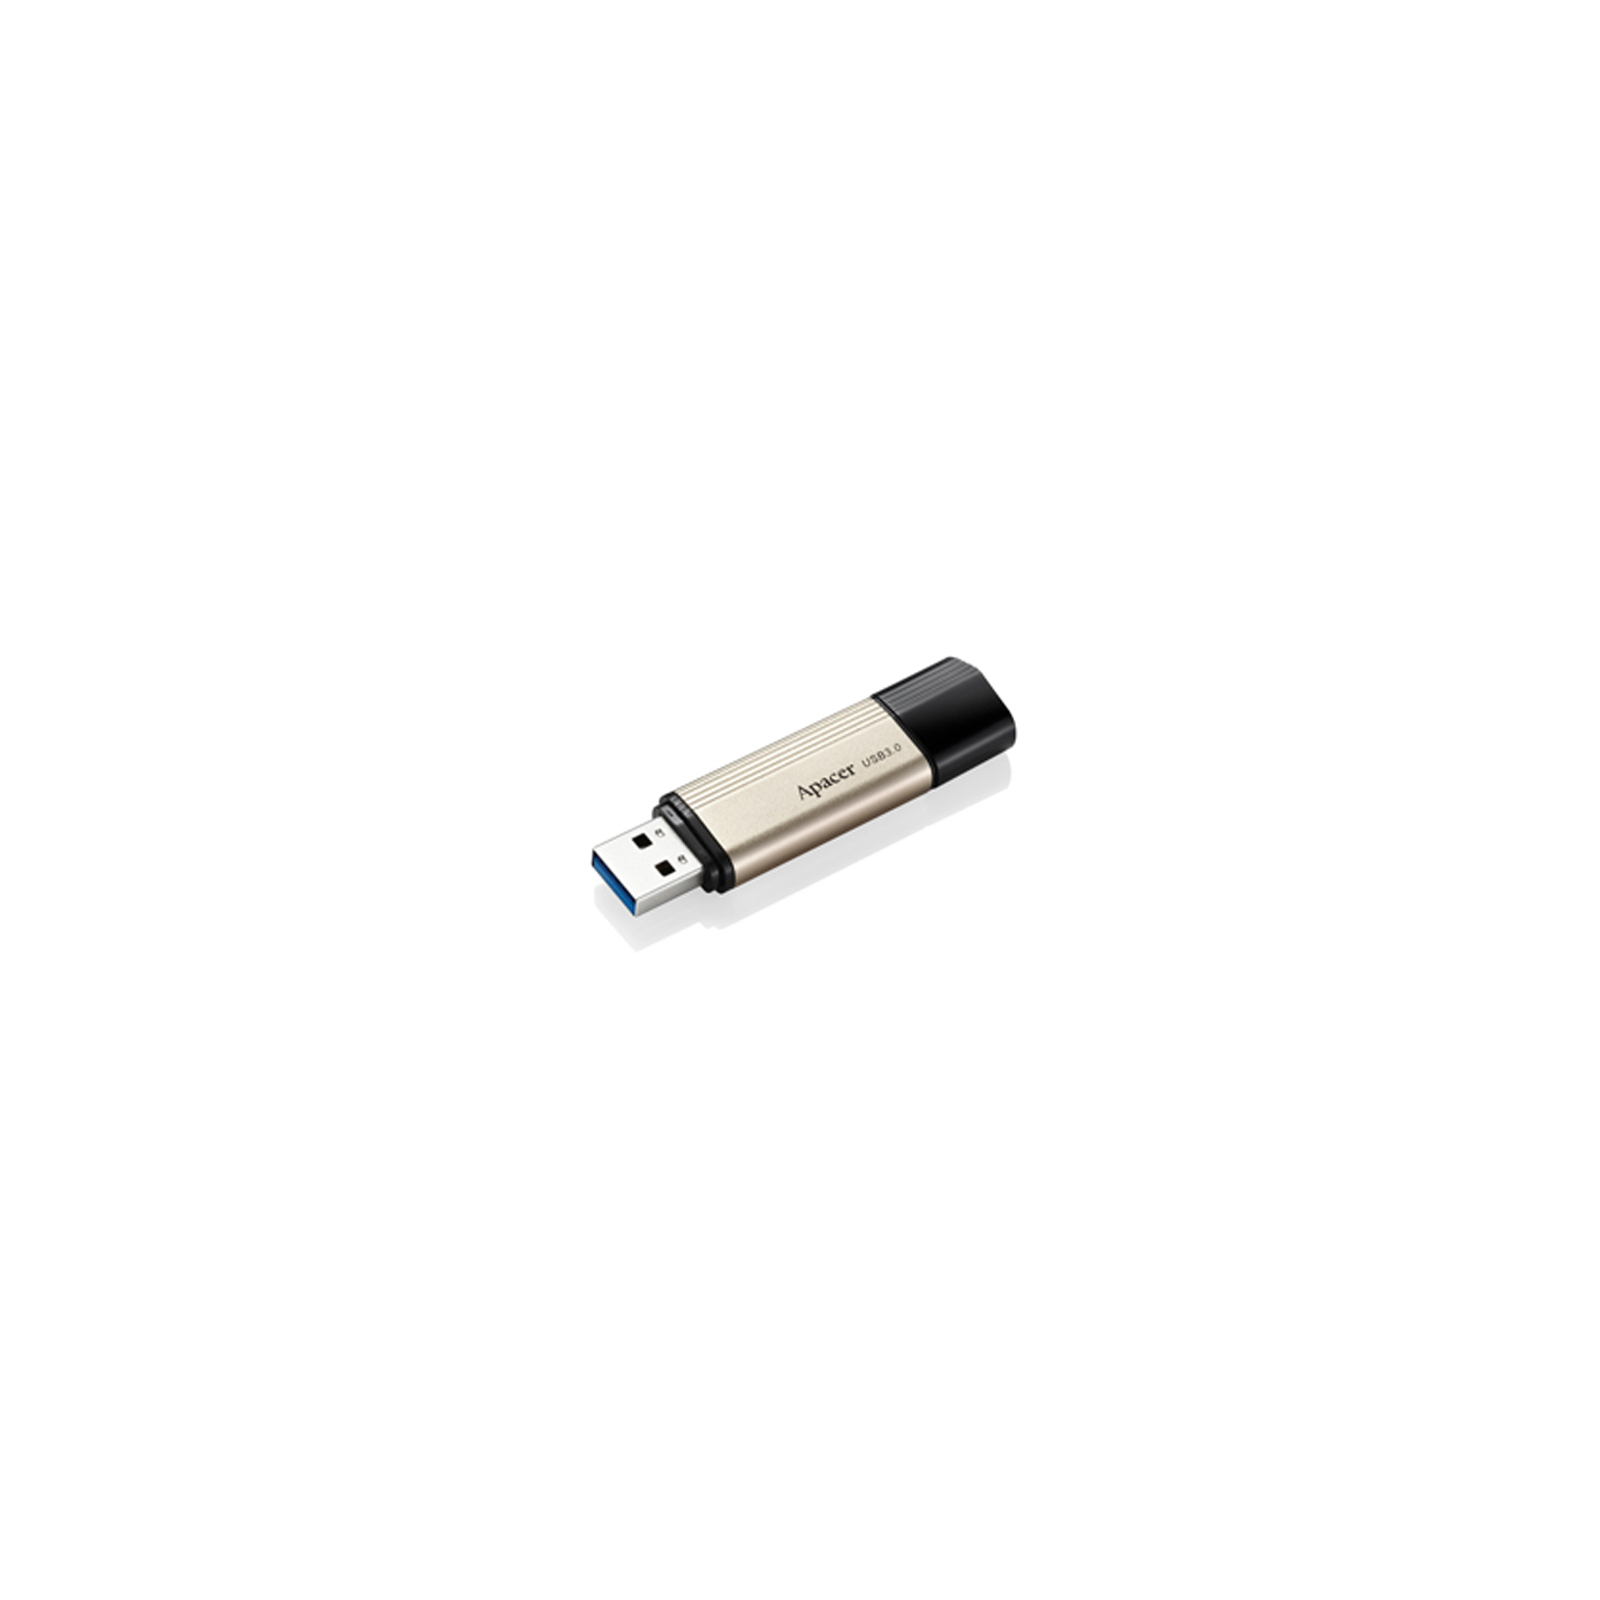 USB флеш накопитель Apacer 32GB AH353 Champagne Gold RP USB3.0 (AP32GAH353C-1) изображение 2